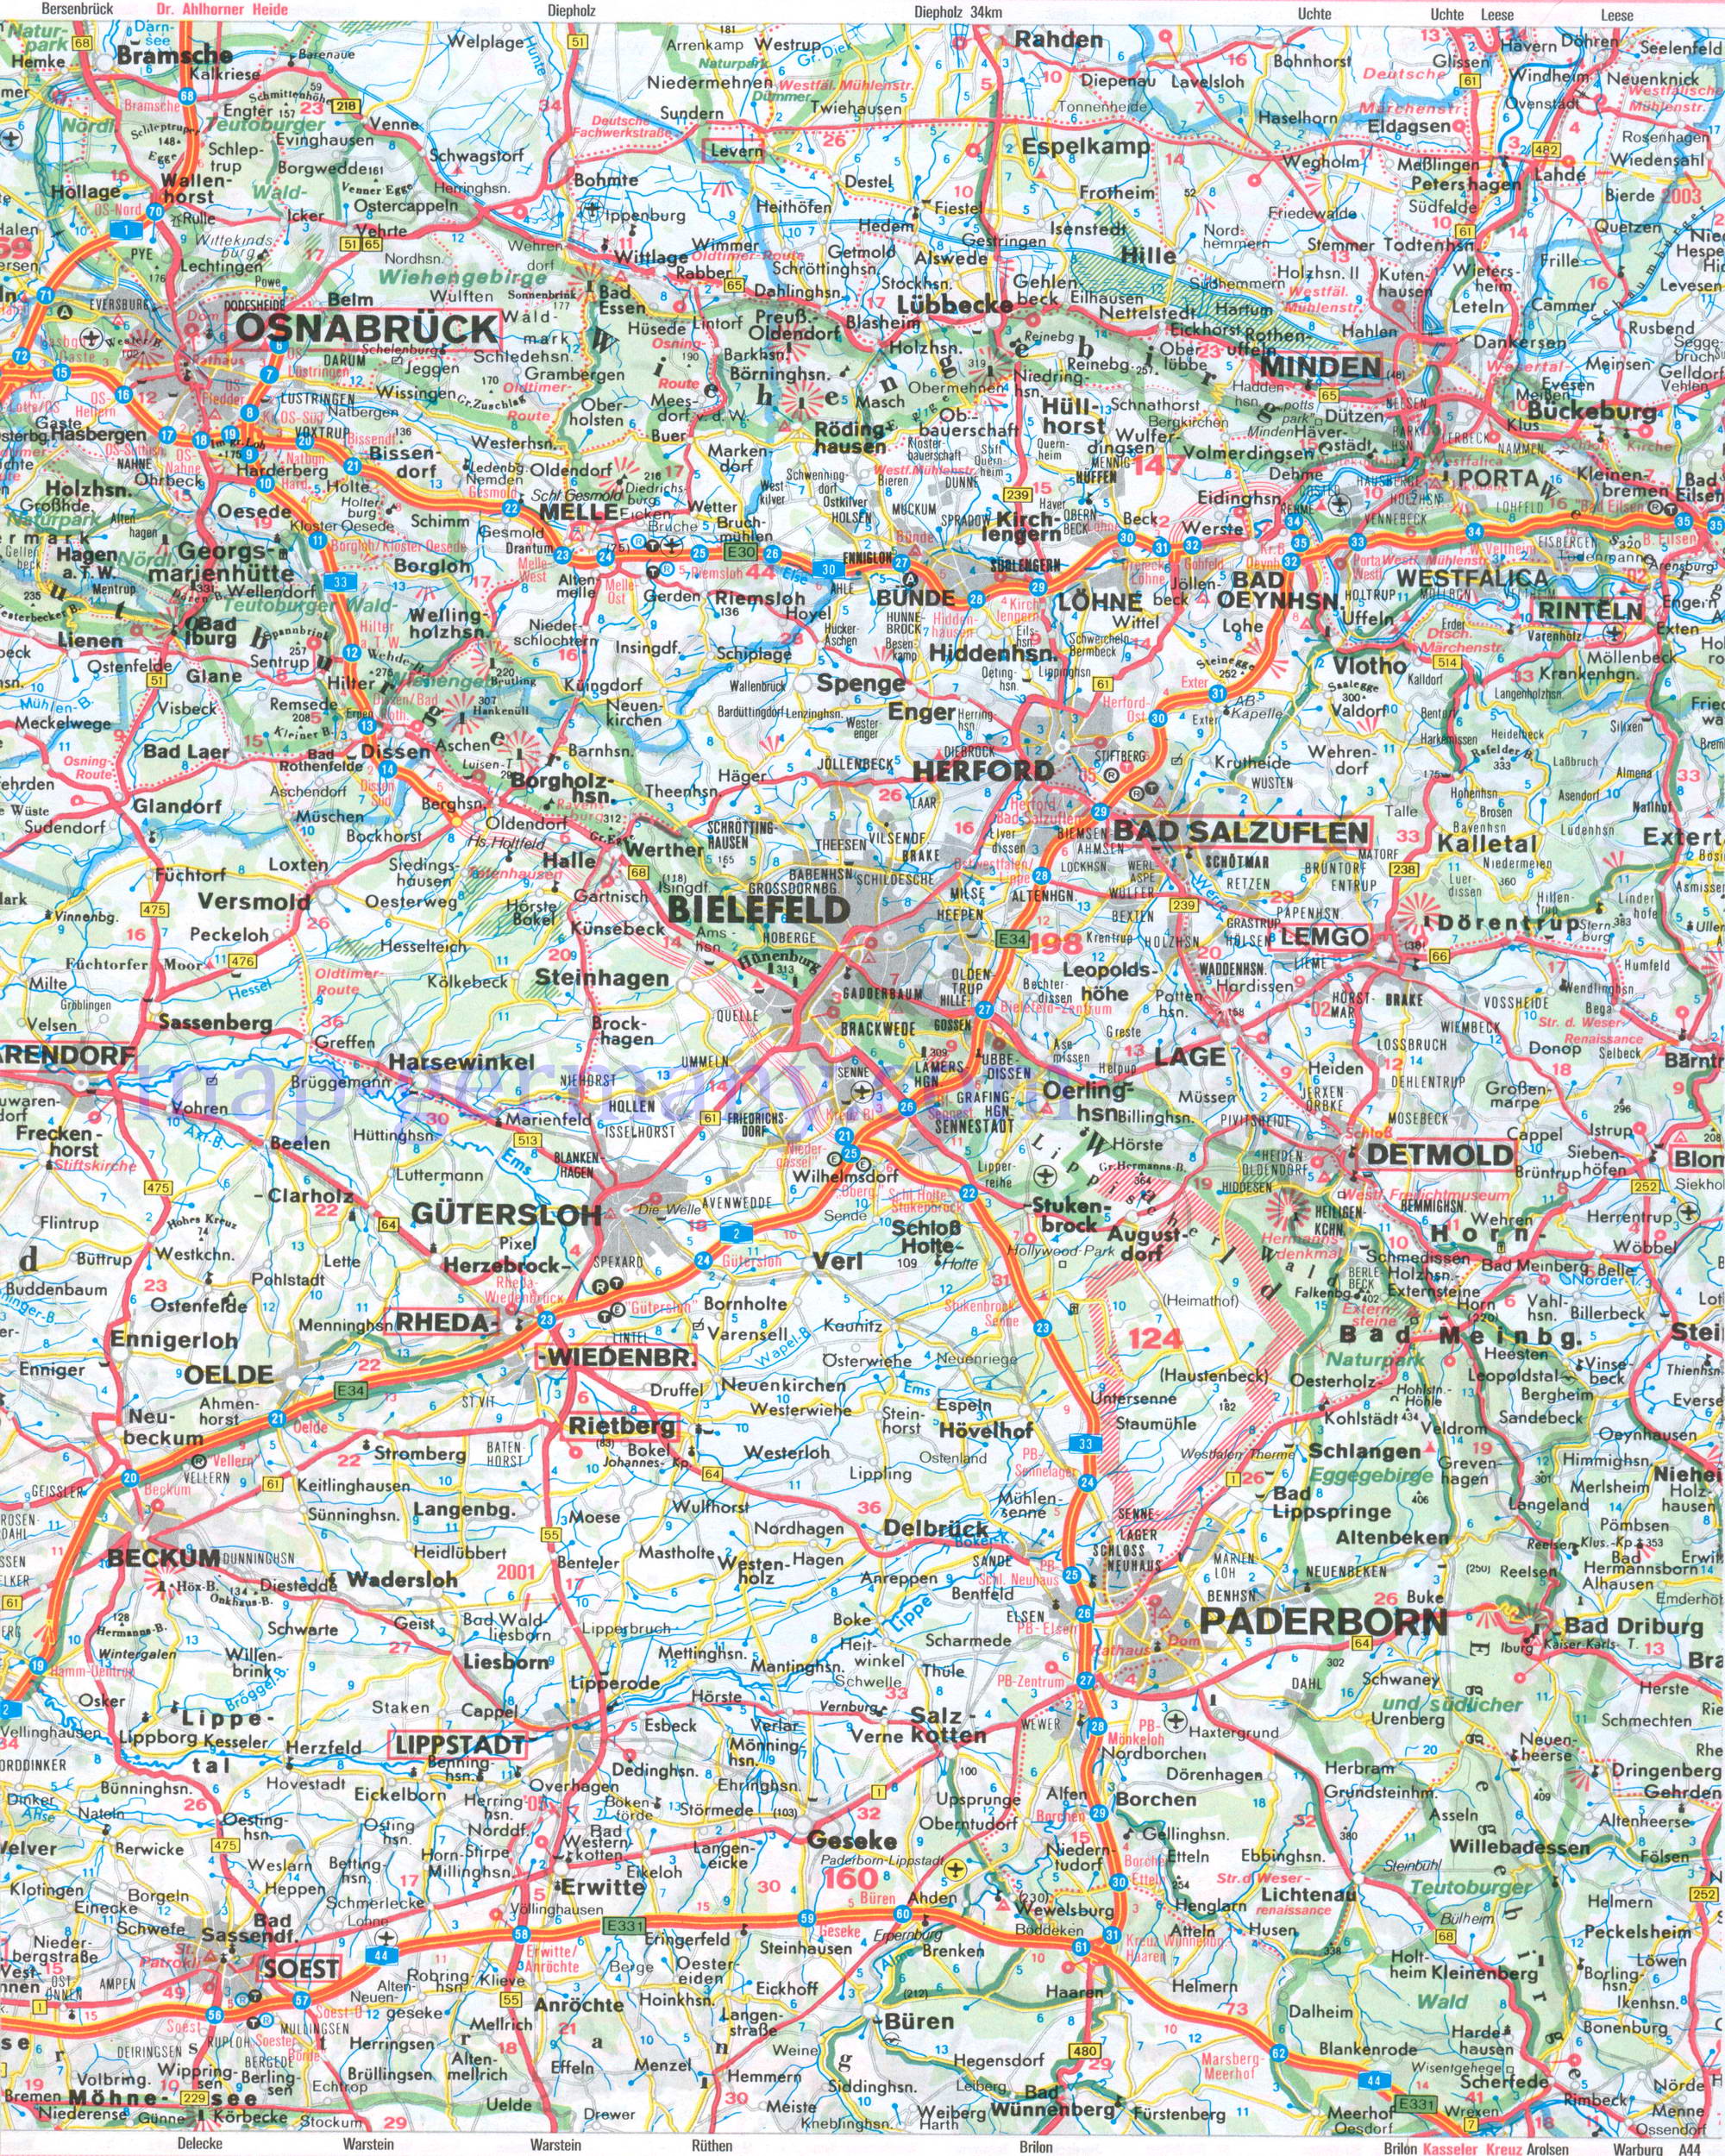  Автомобильная карта земли Северный Рейн - Вестфалия. Подробная карта земли Северный Рейн-Вестфалия, C0 - 